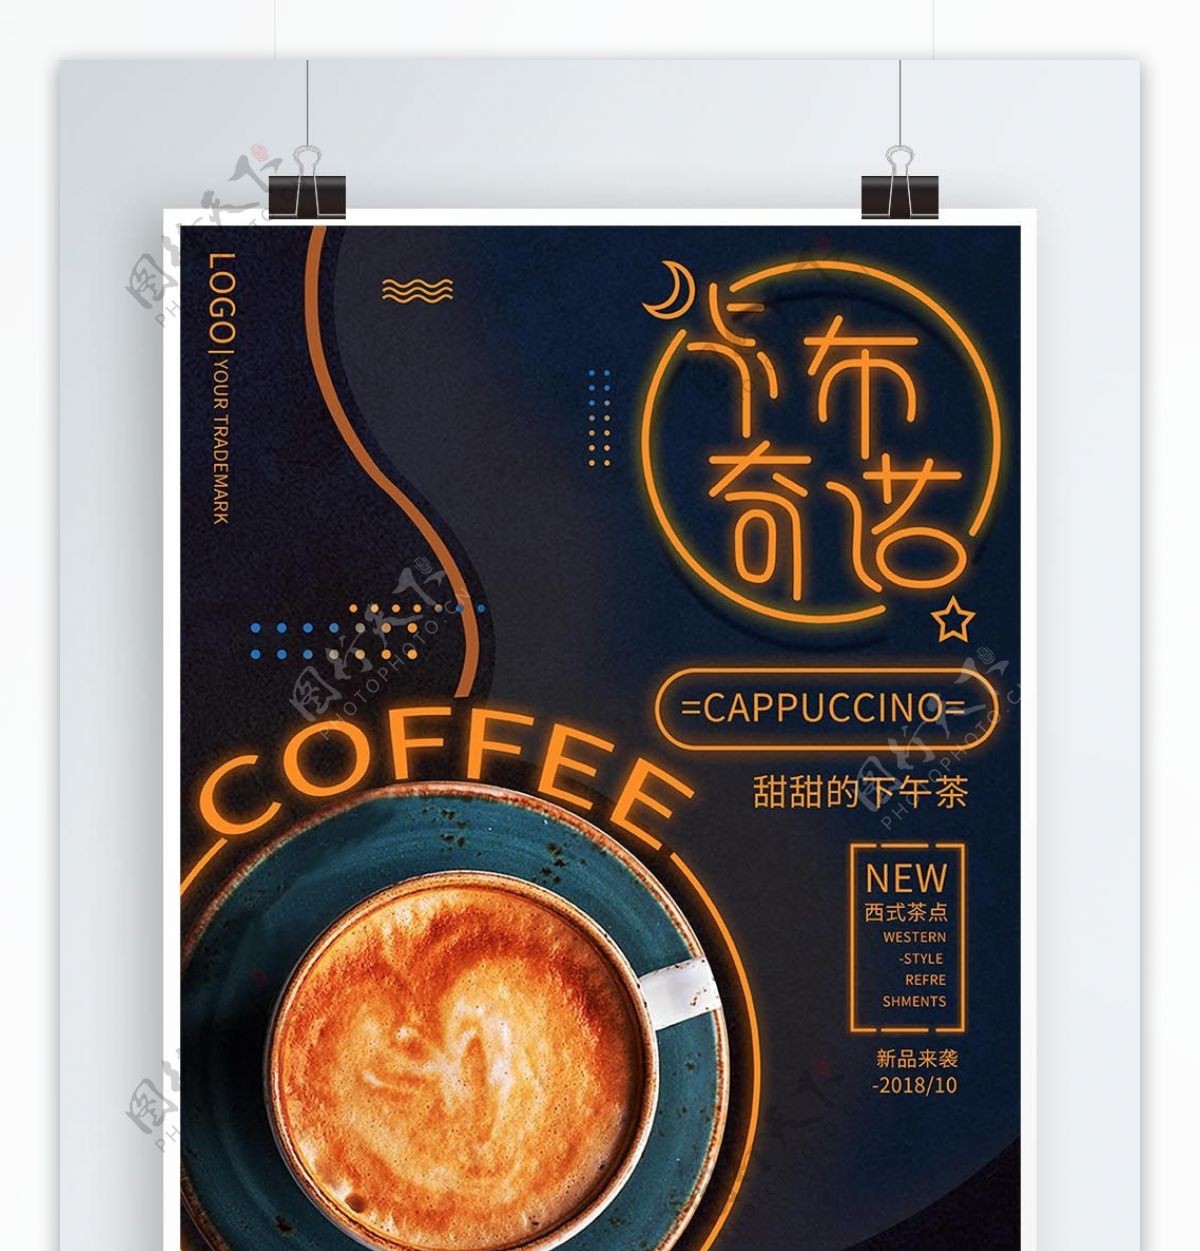 原创创意咖啡卡布奇诺热饮海报